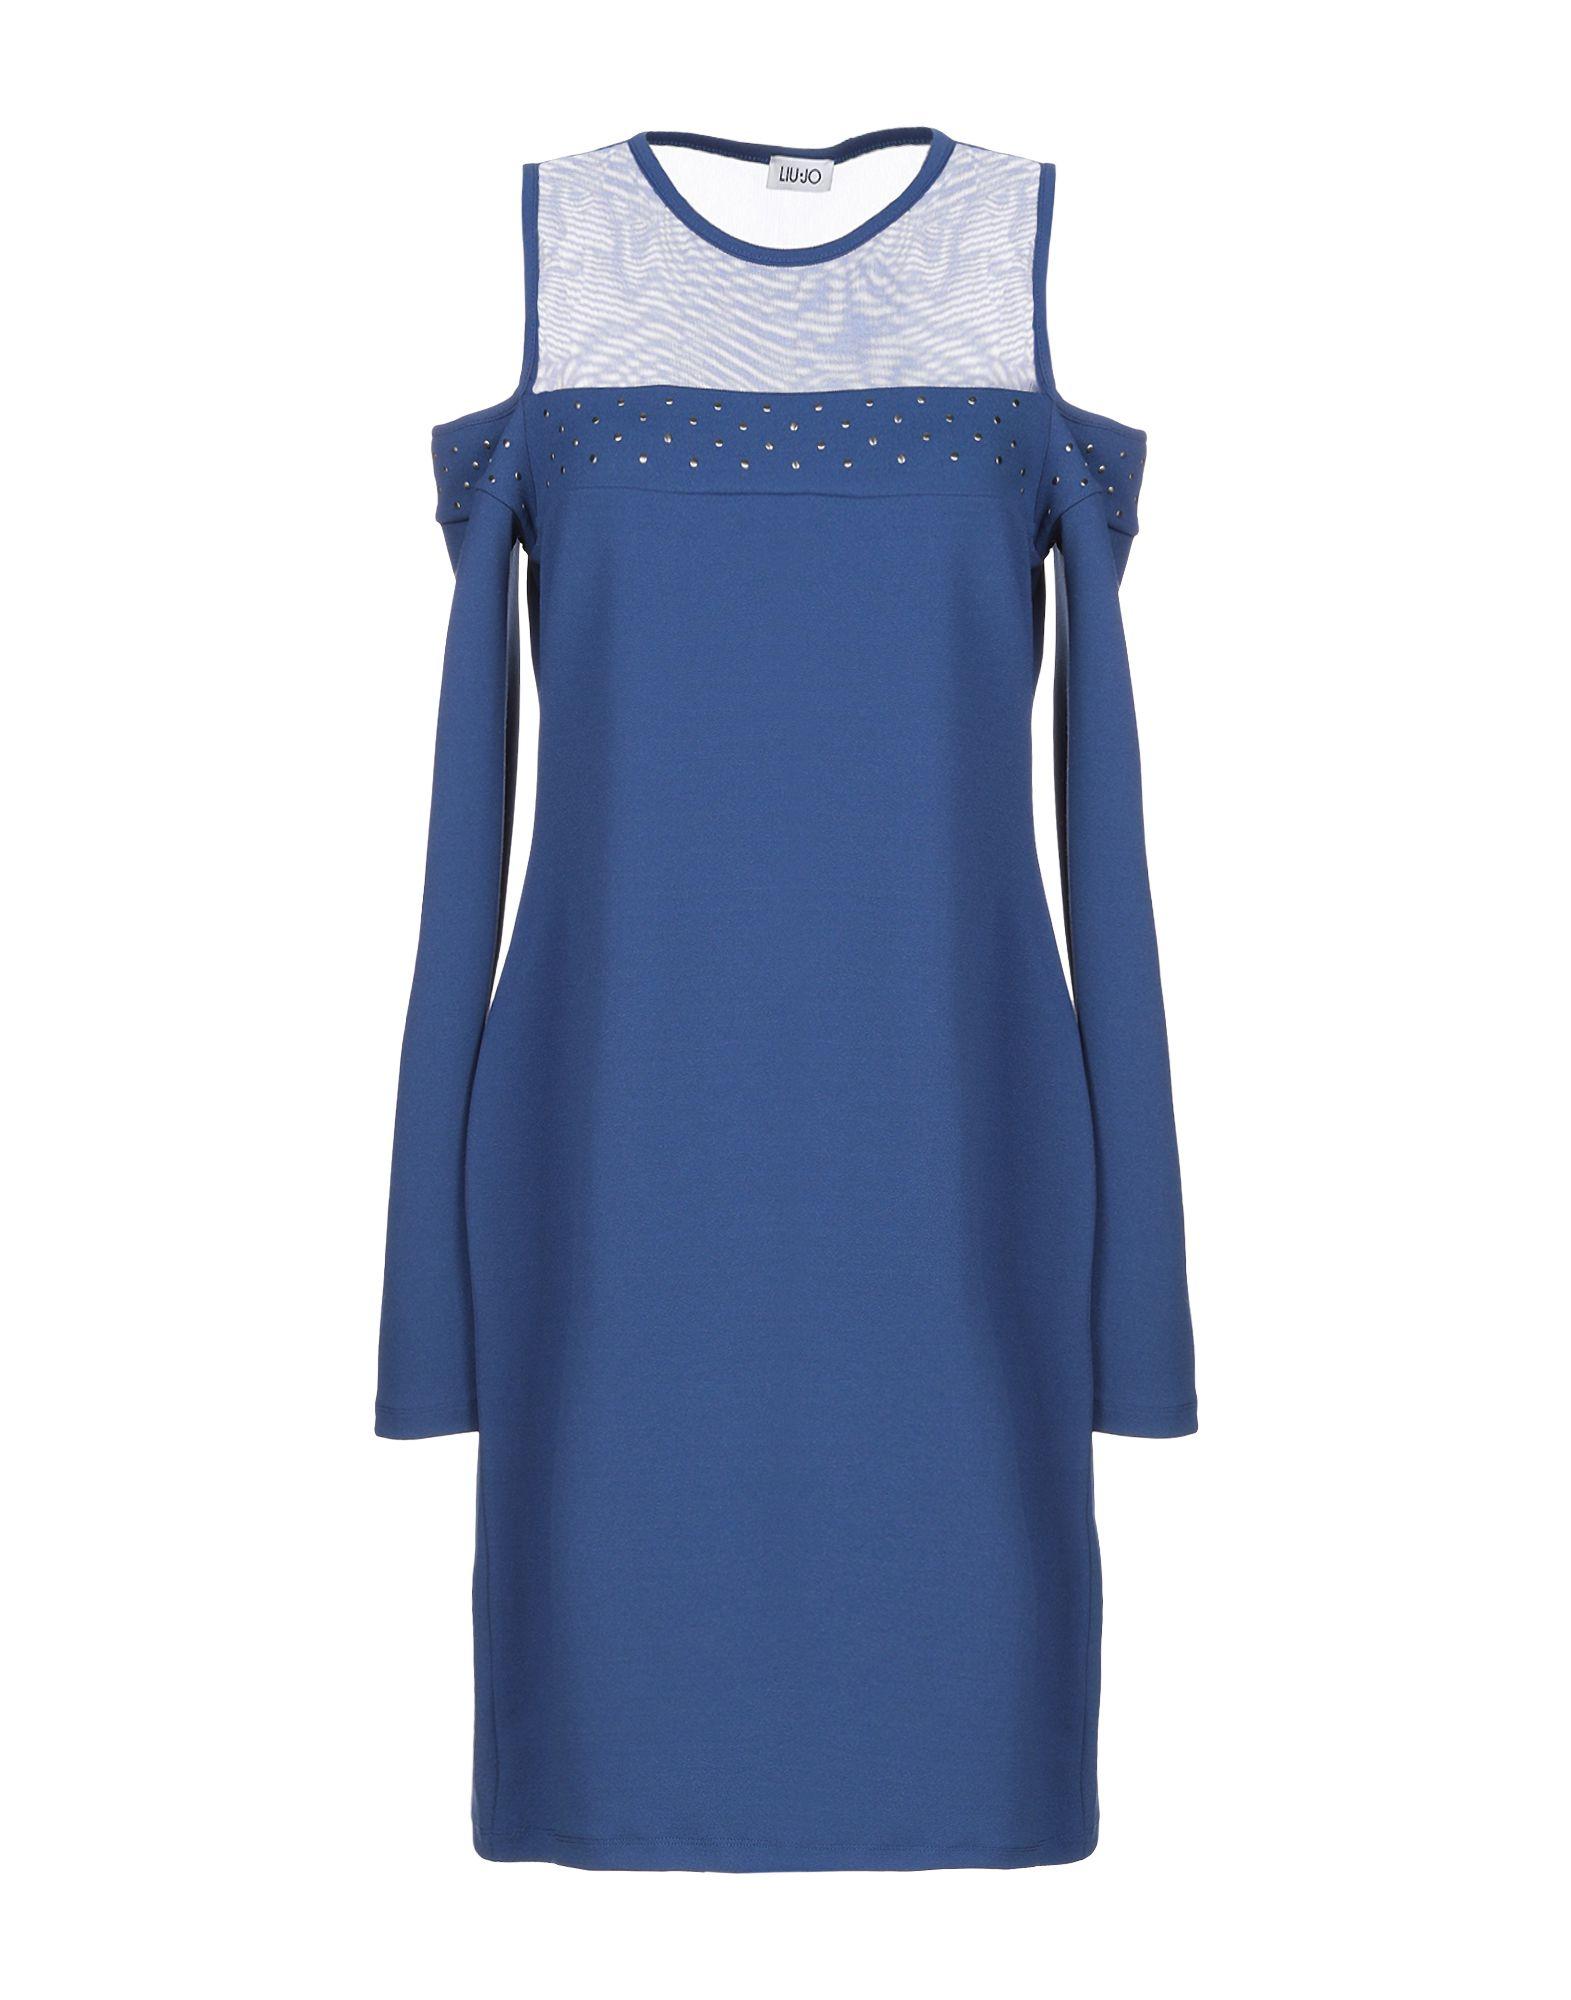 Liu Jo Tulle Short Dress in Blue - Lyst